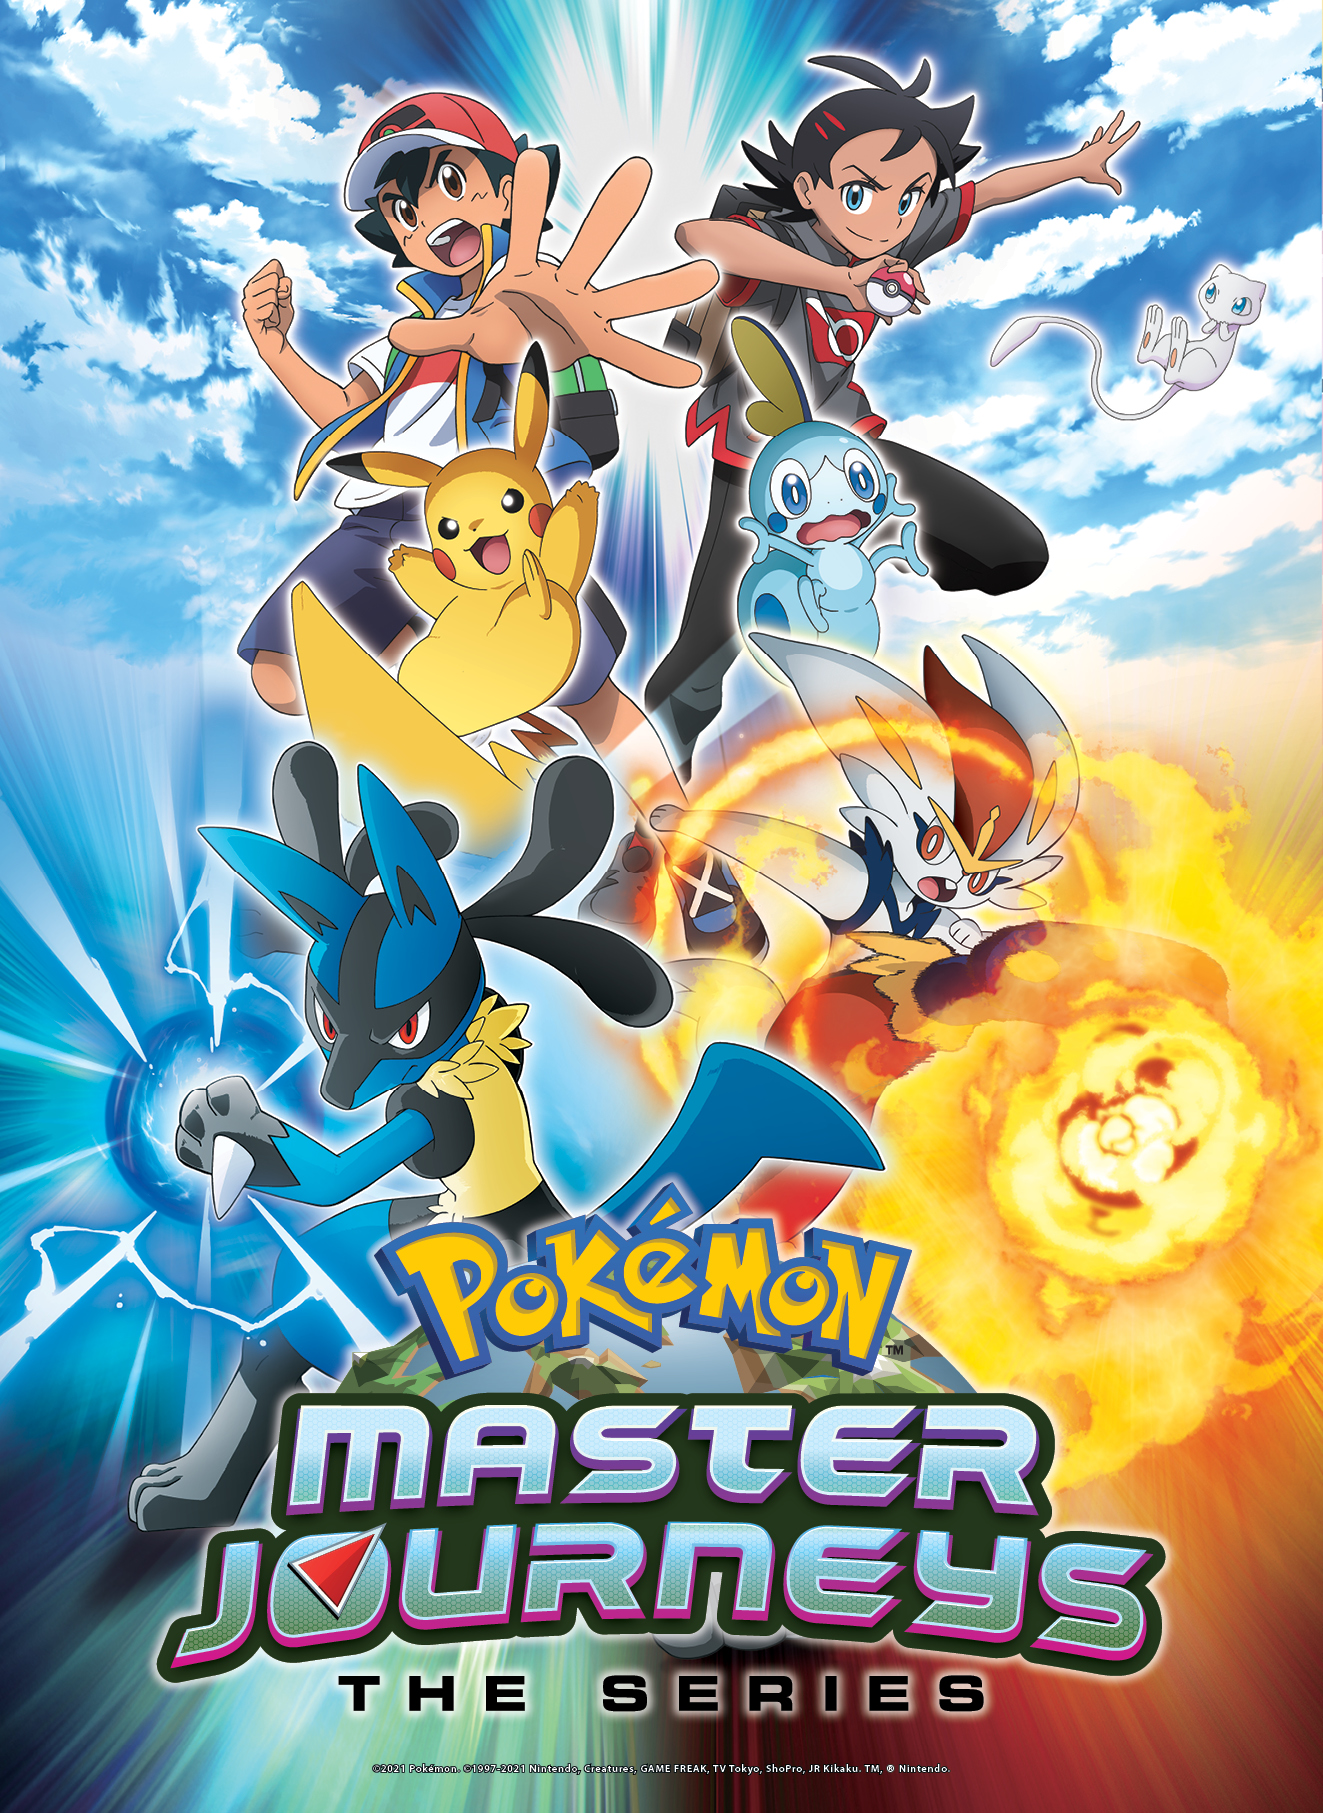 Pokémon Master Journeys Key Art.jpg